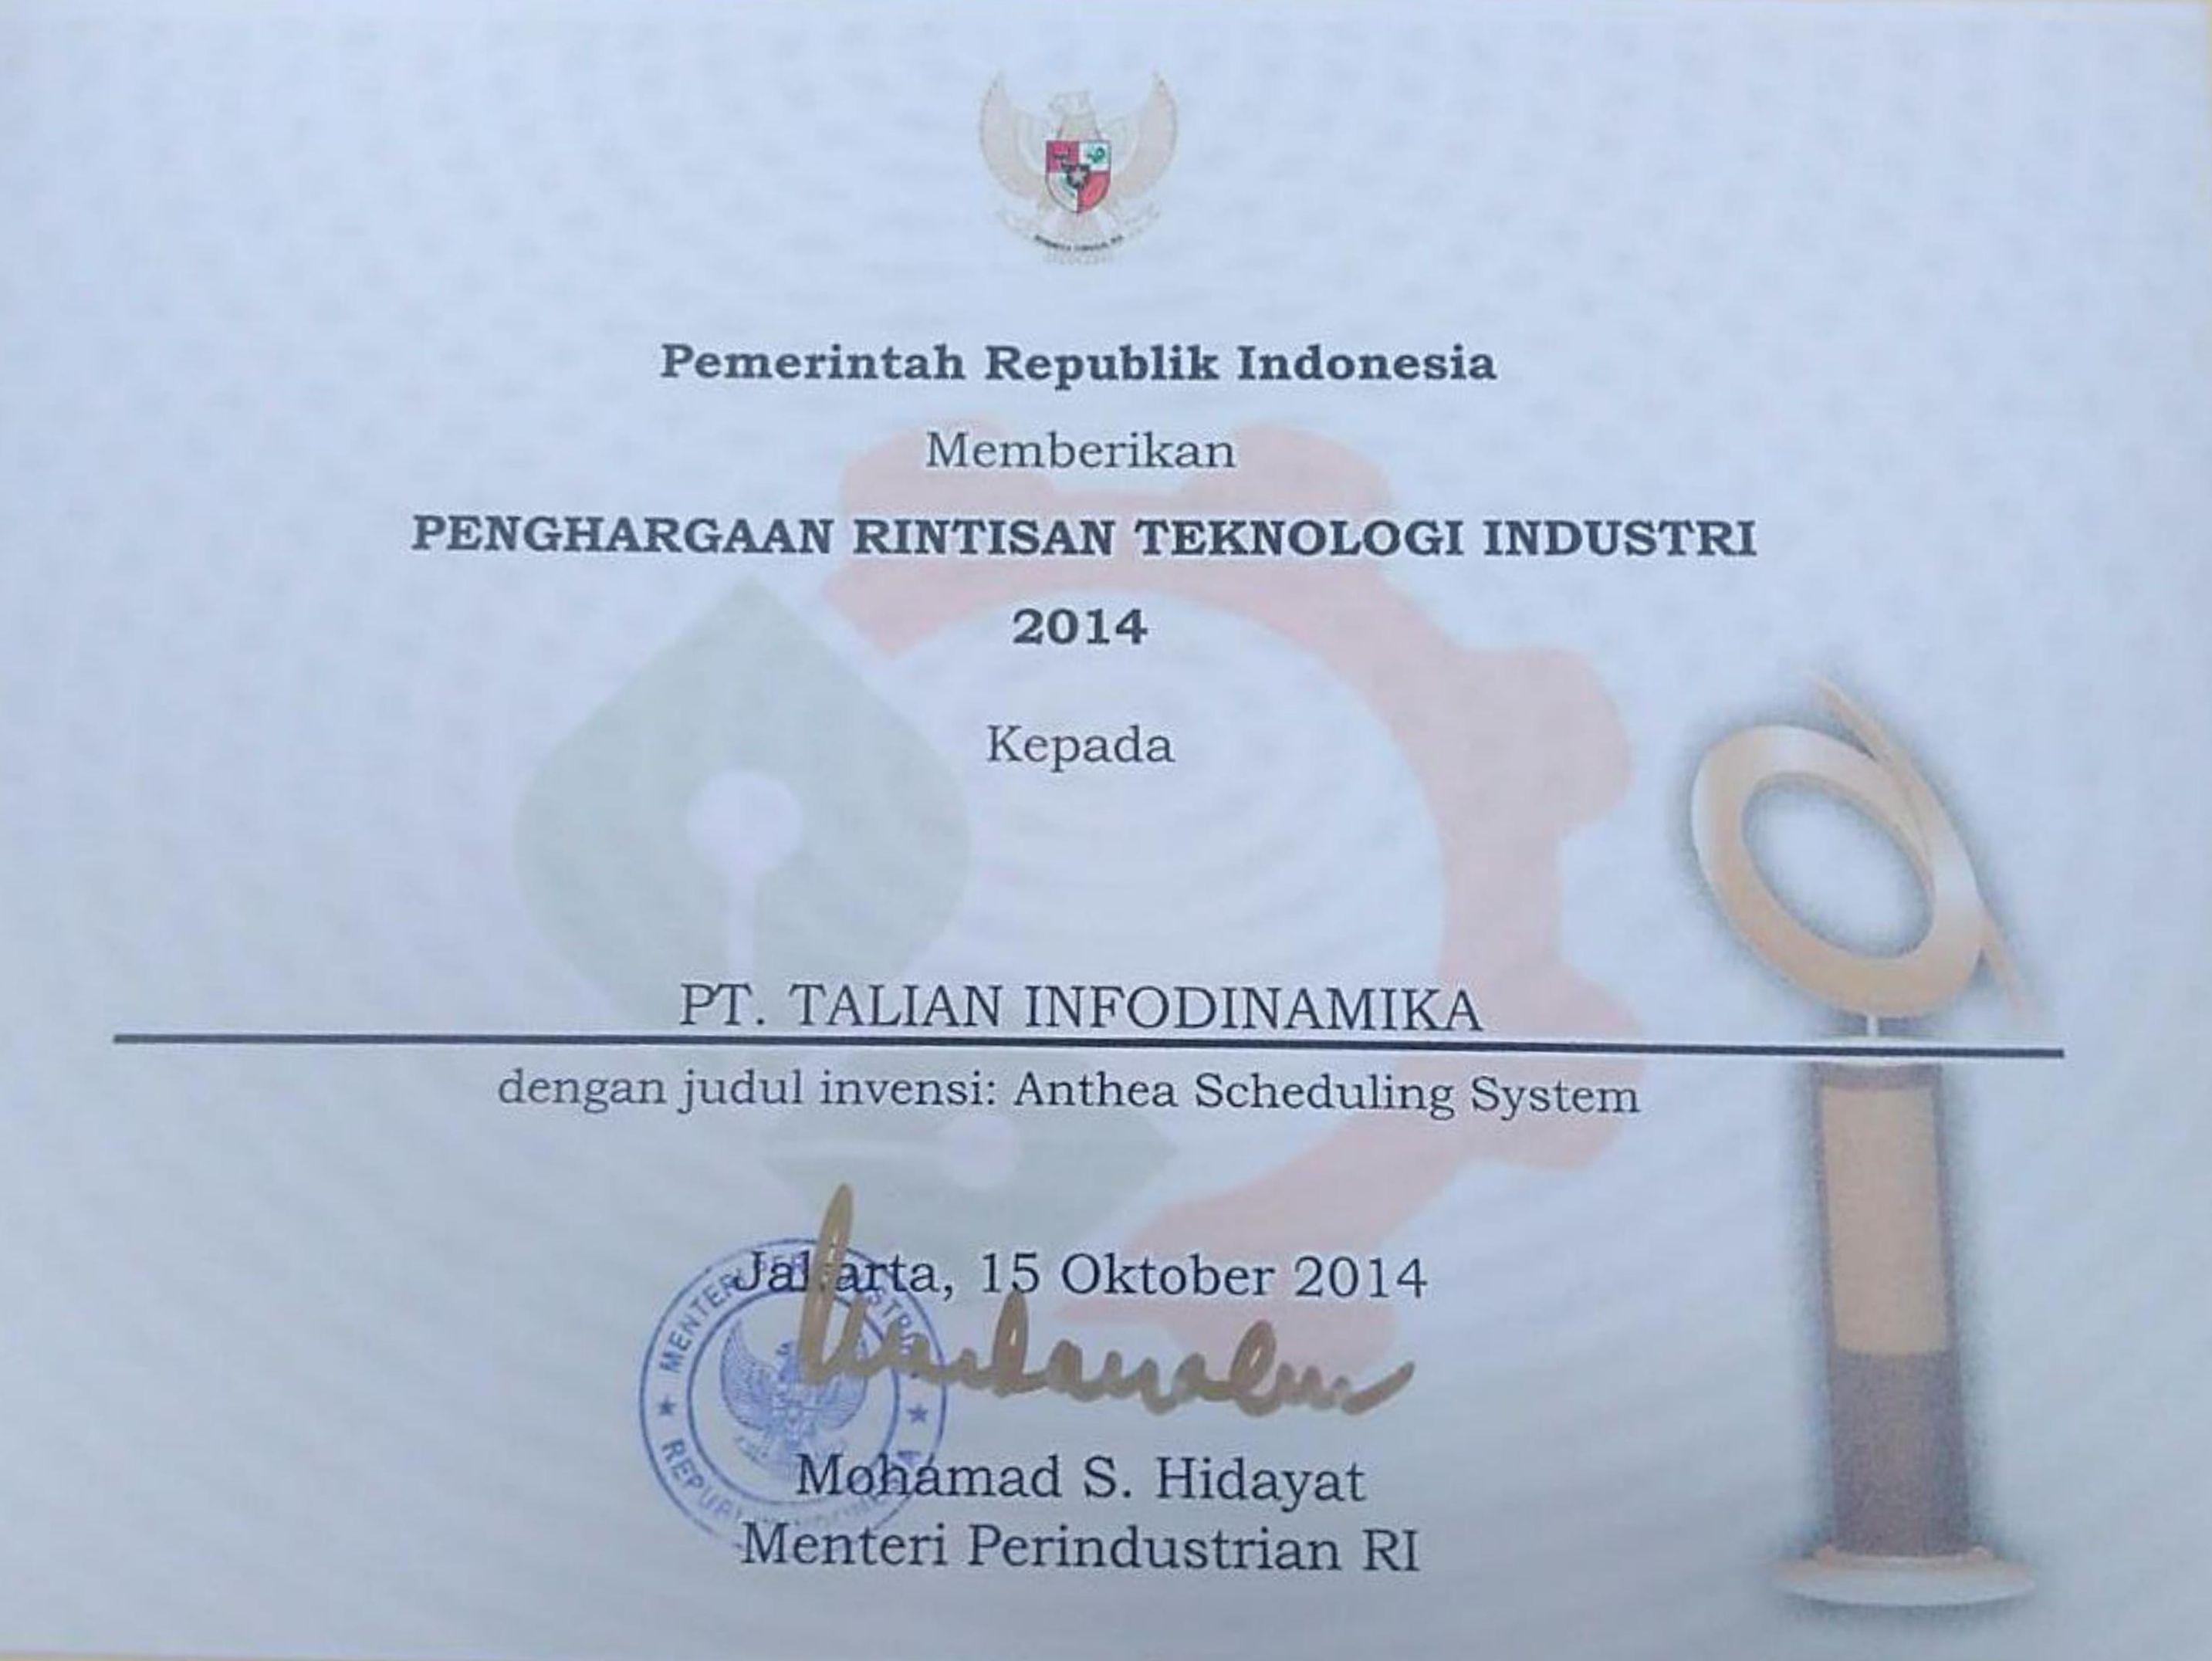 Rintisan Teknologi Industri Award